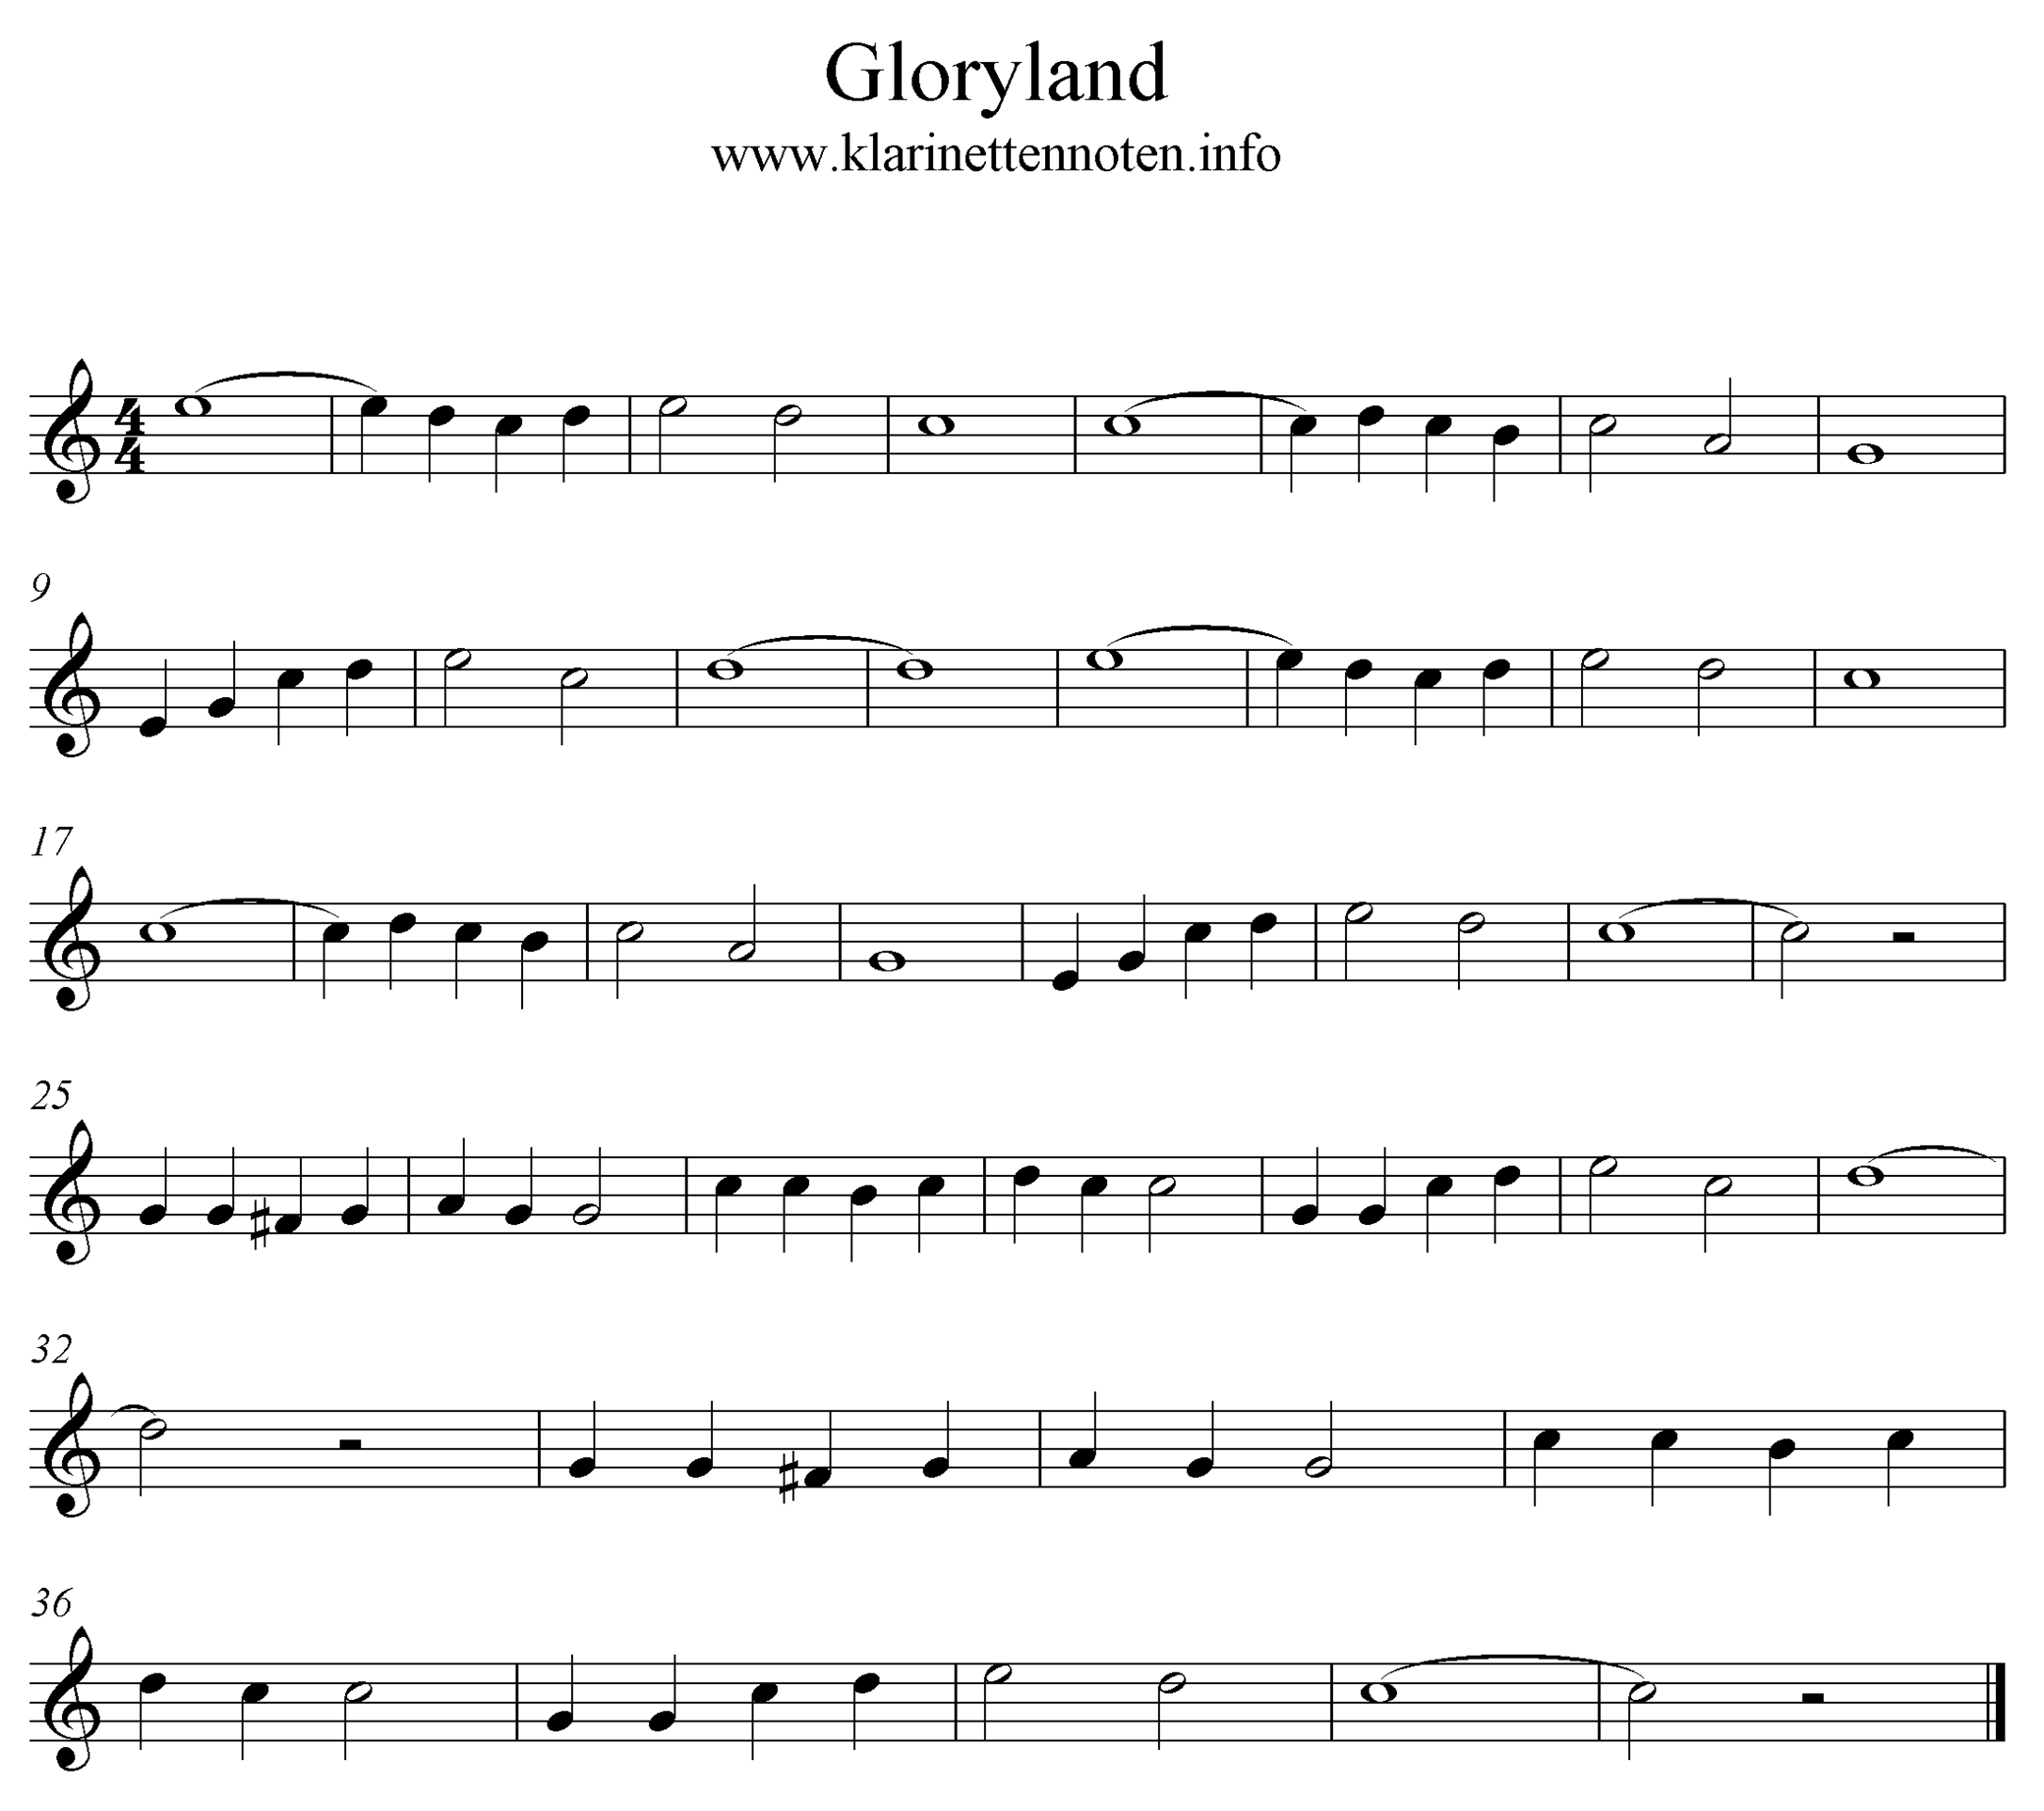 Noten Over the Gloryland Freesheet music